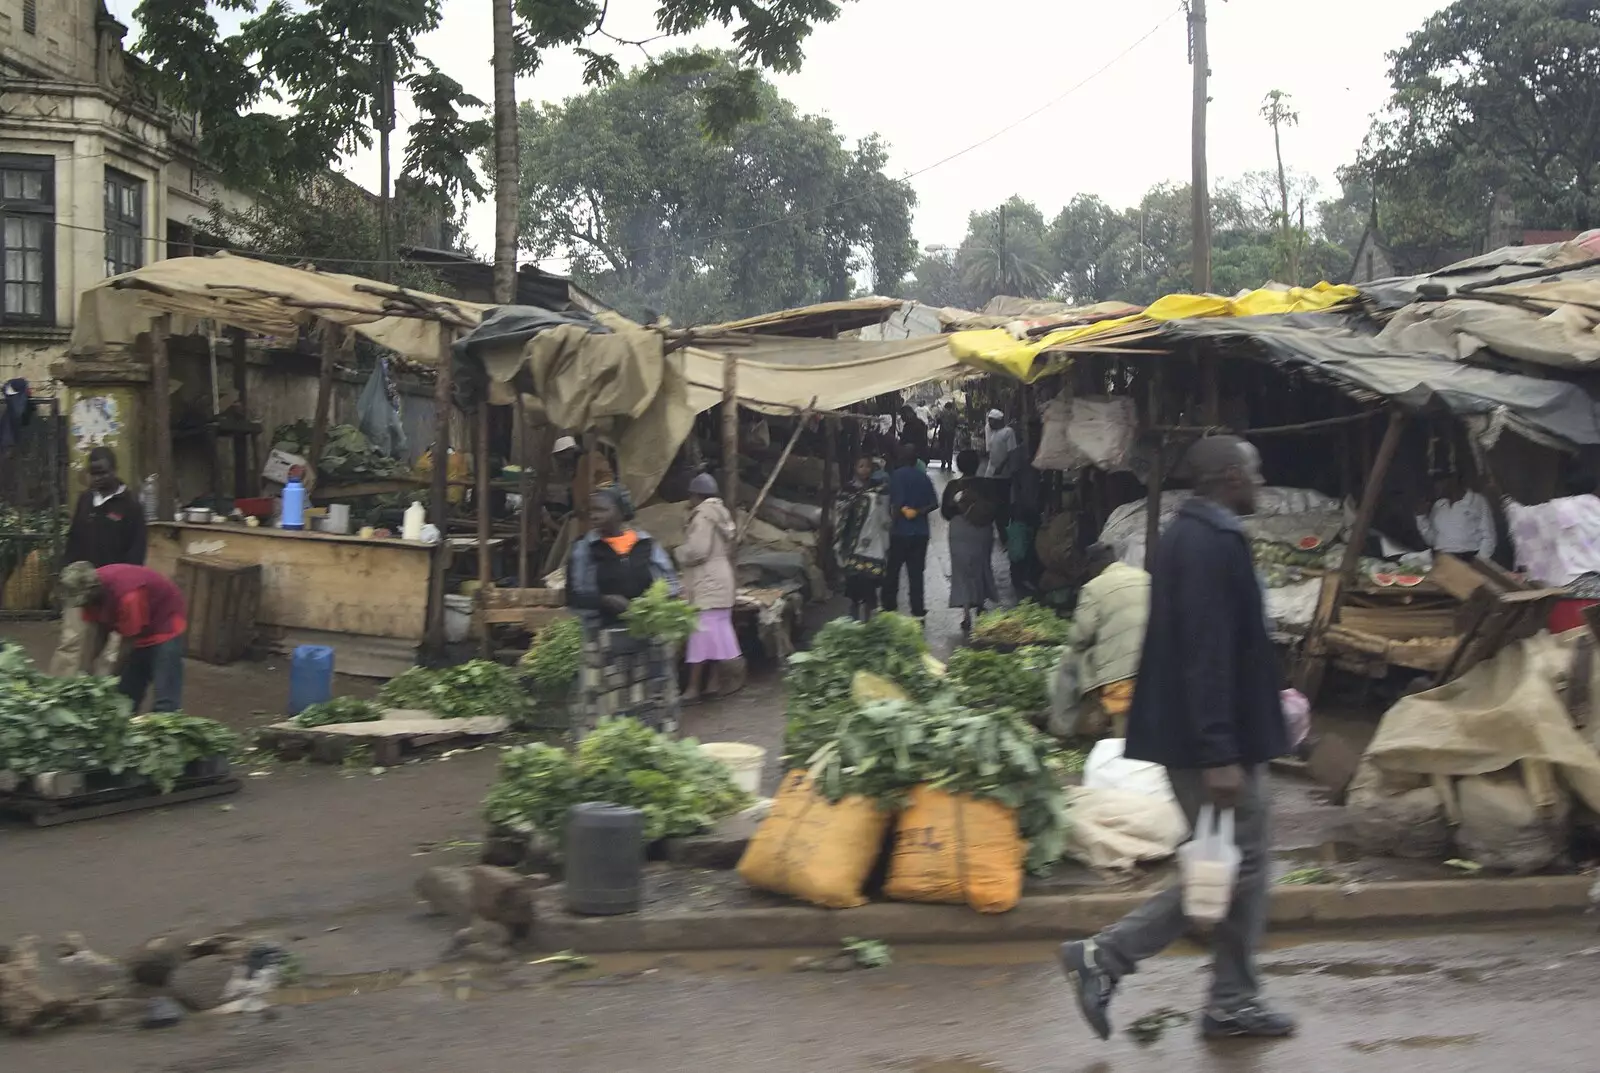 A local market, from Nairobi and the Road to Maasai Mara, Kenya, Africa - 1st November 2010